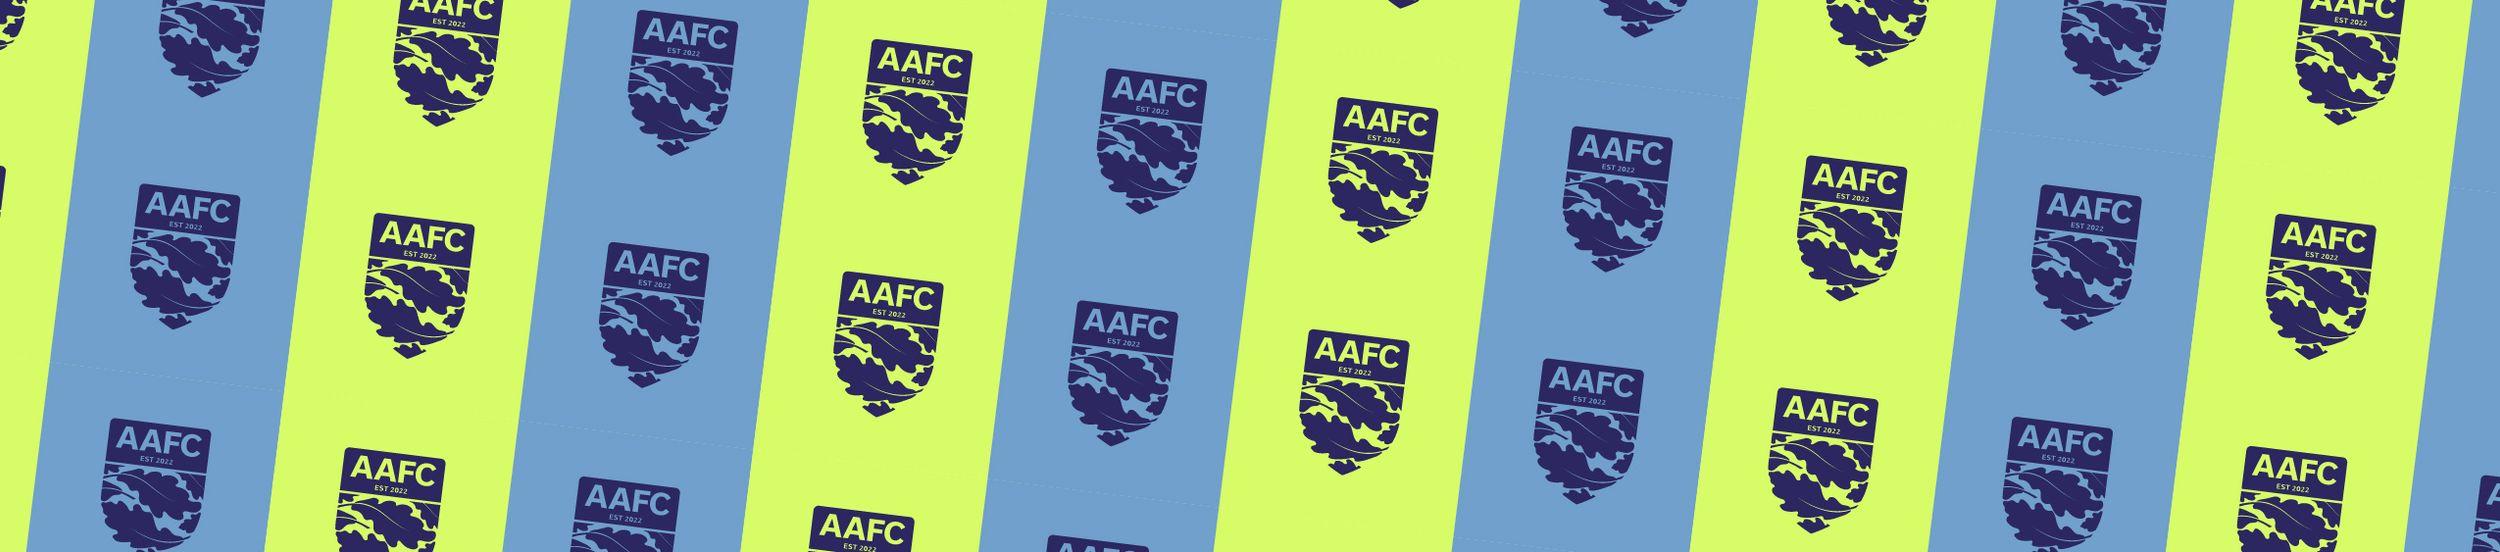 The AAFC badges